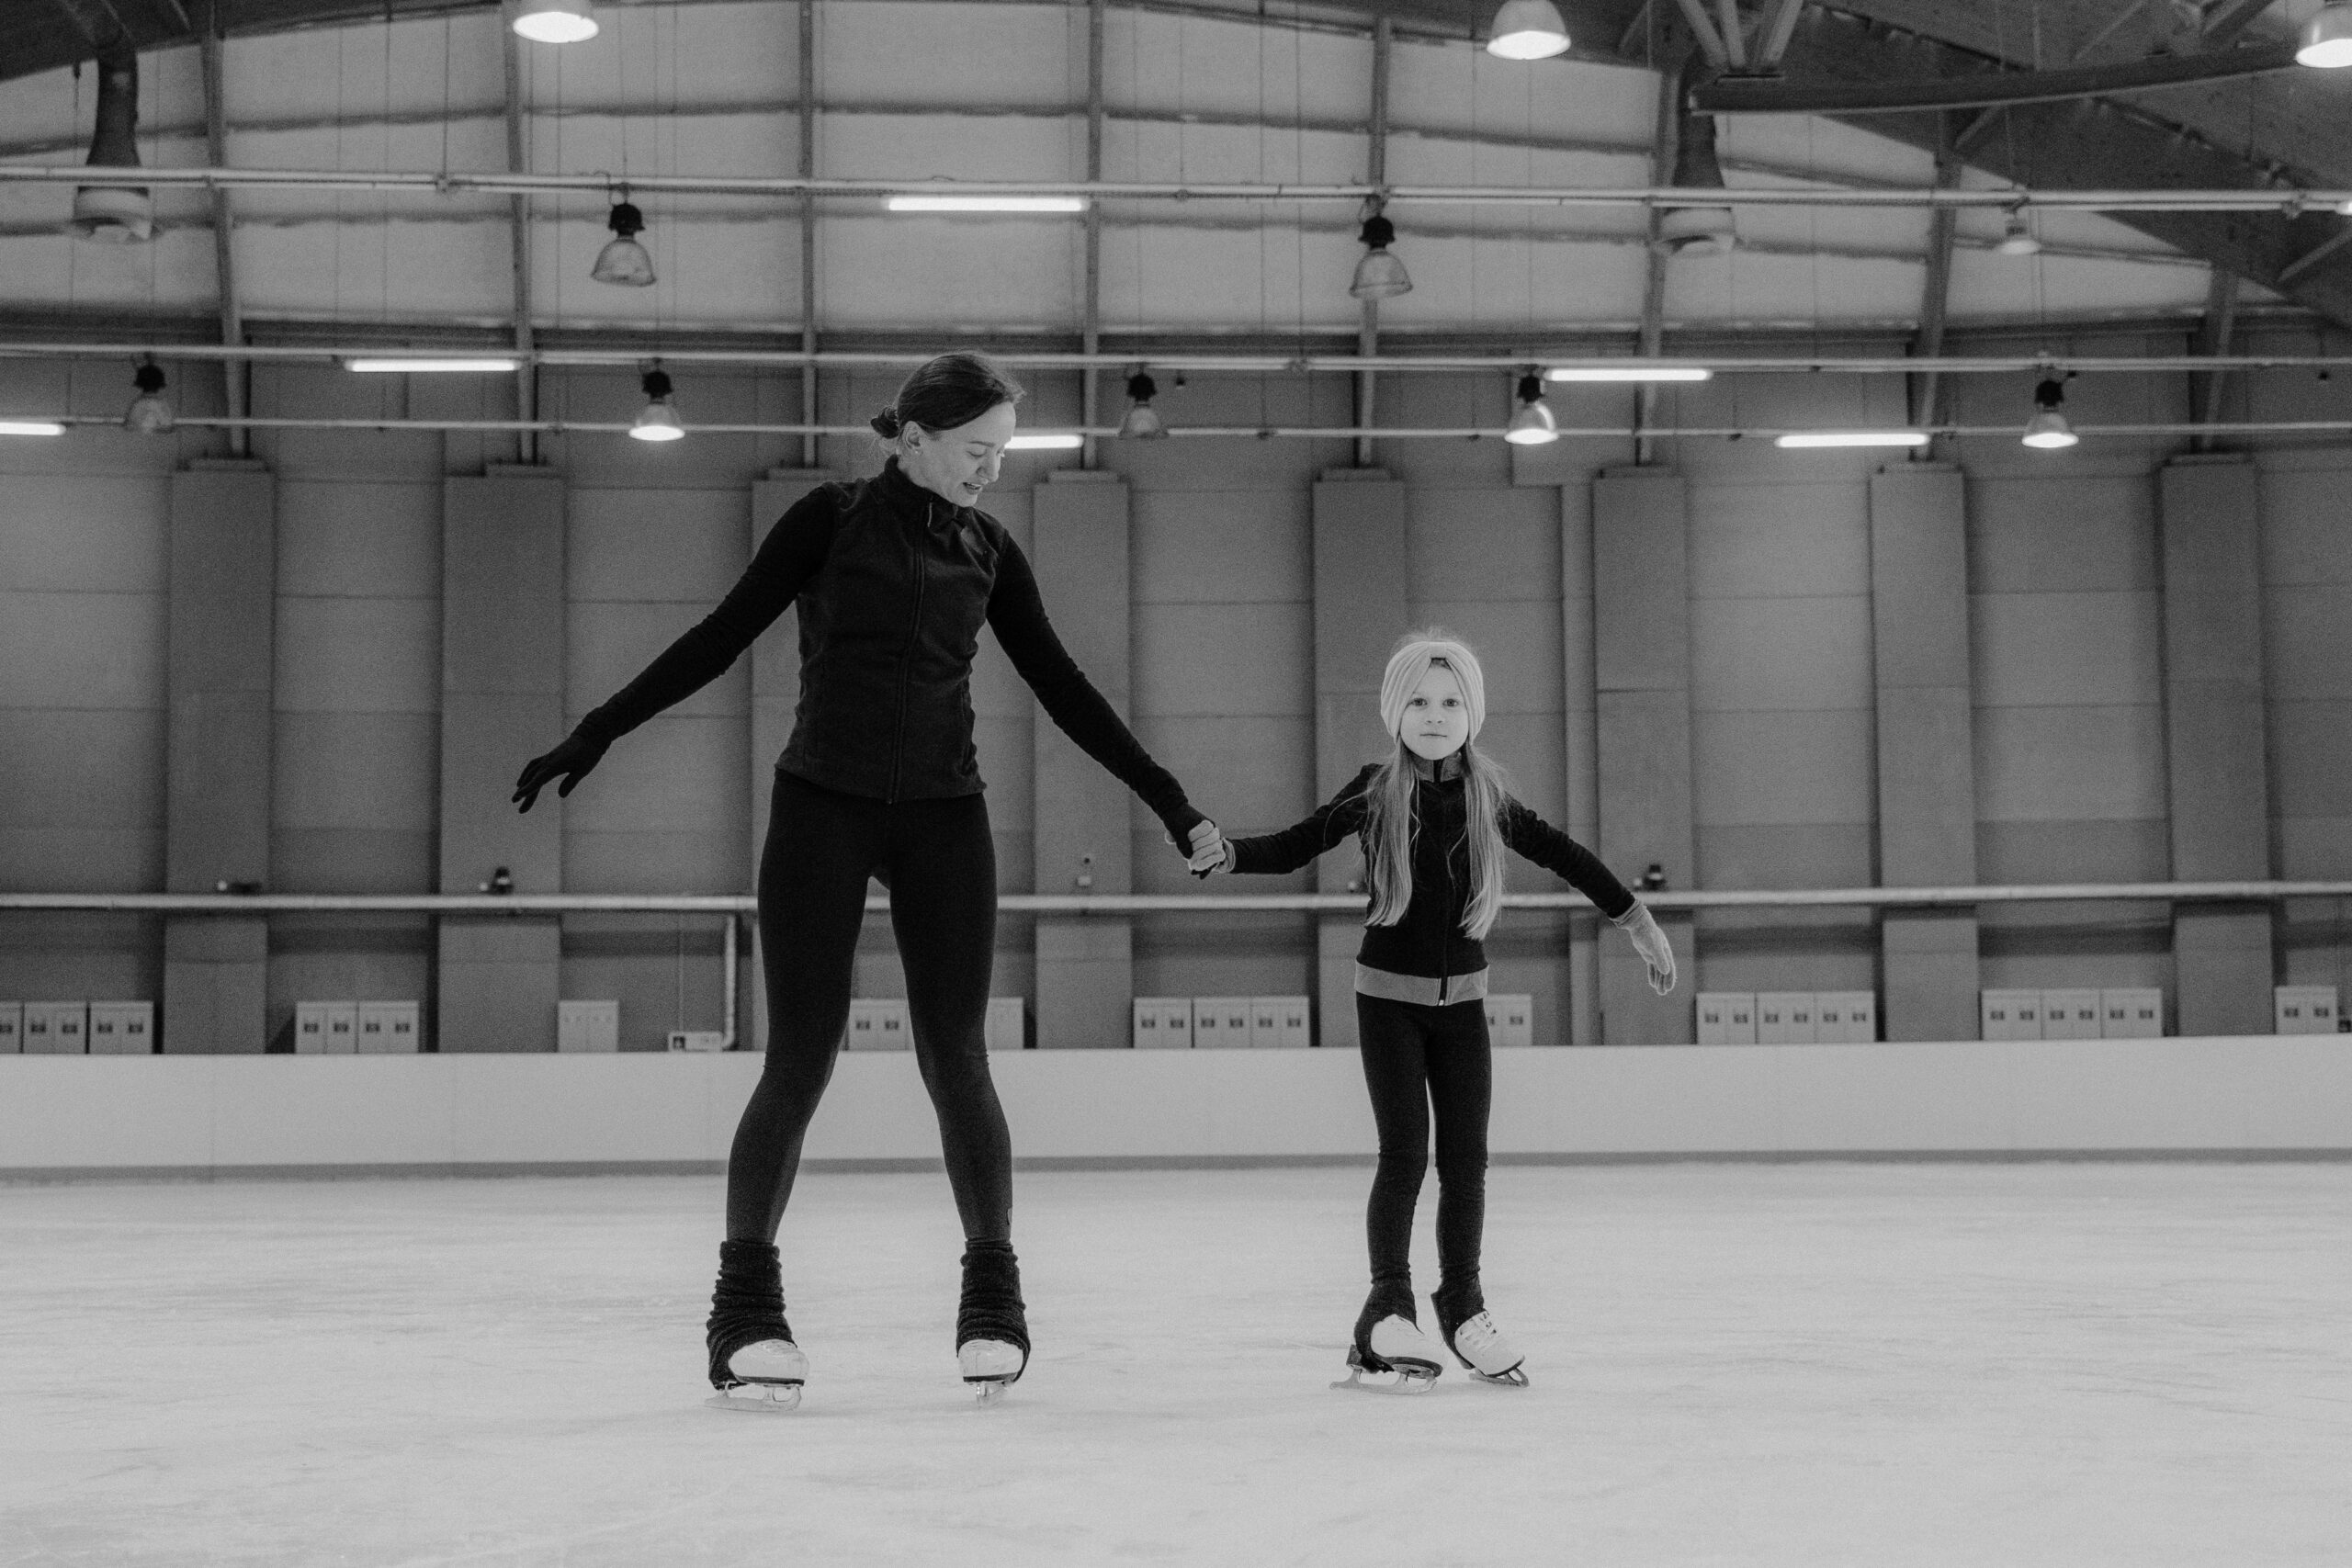 Comment apprendre le patin à glace ? Les conseils